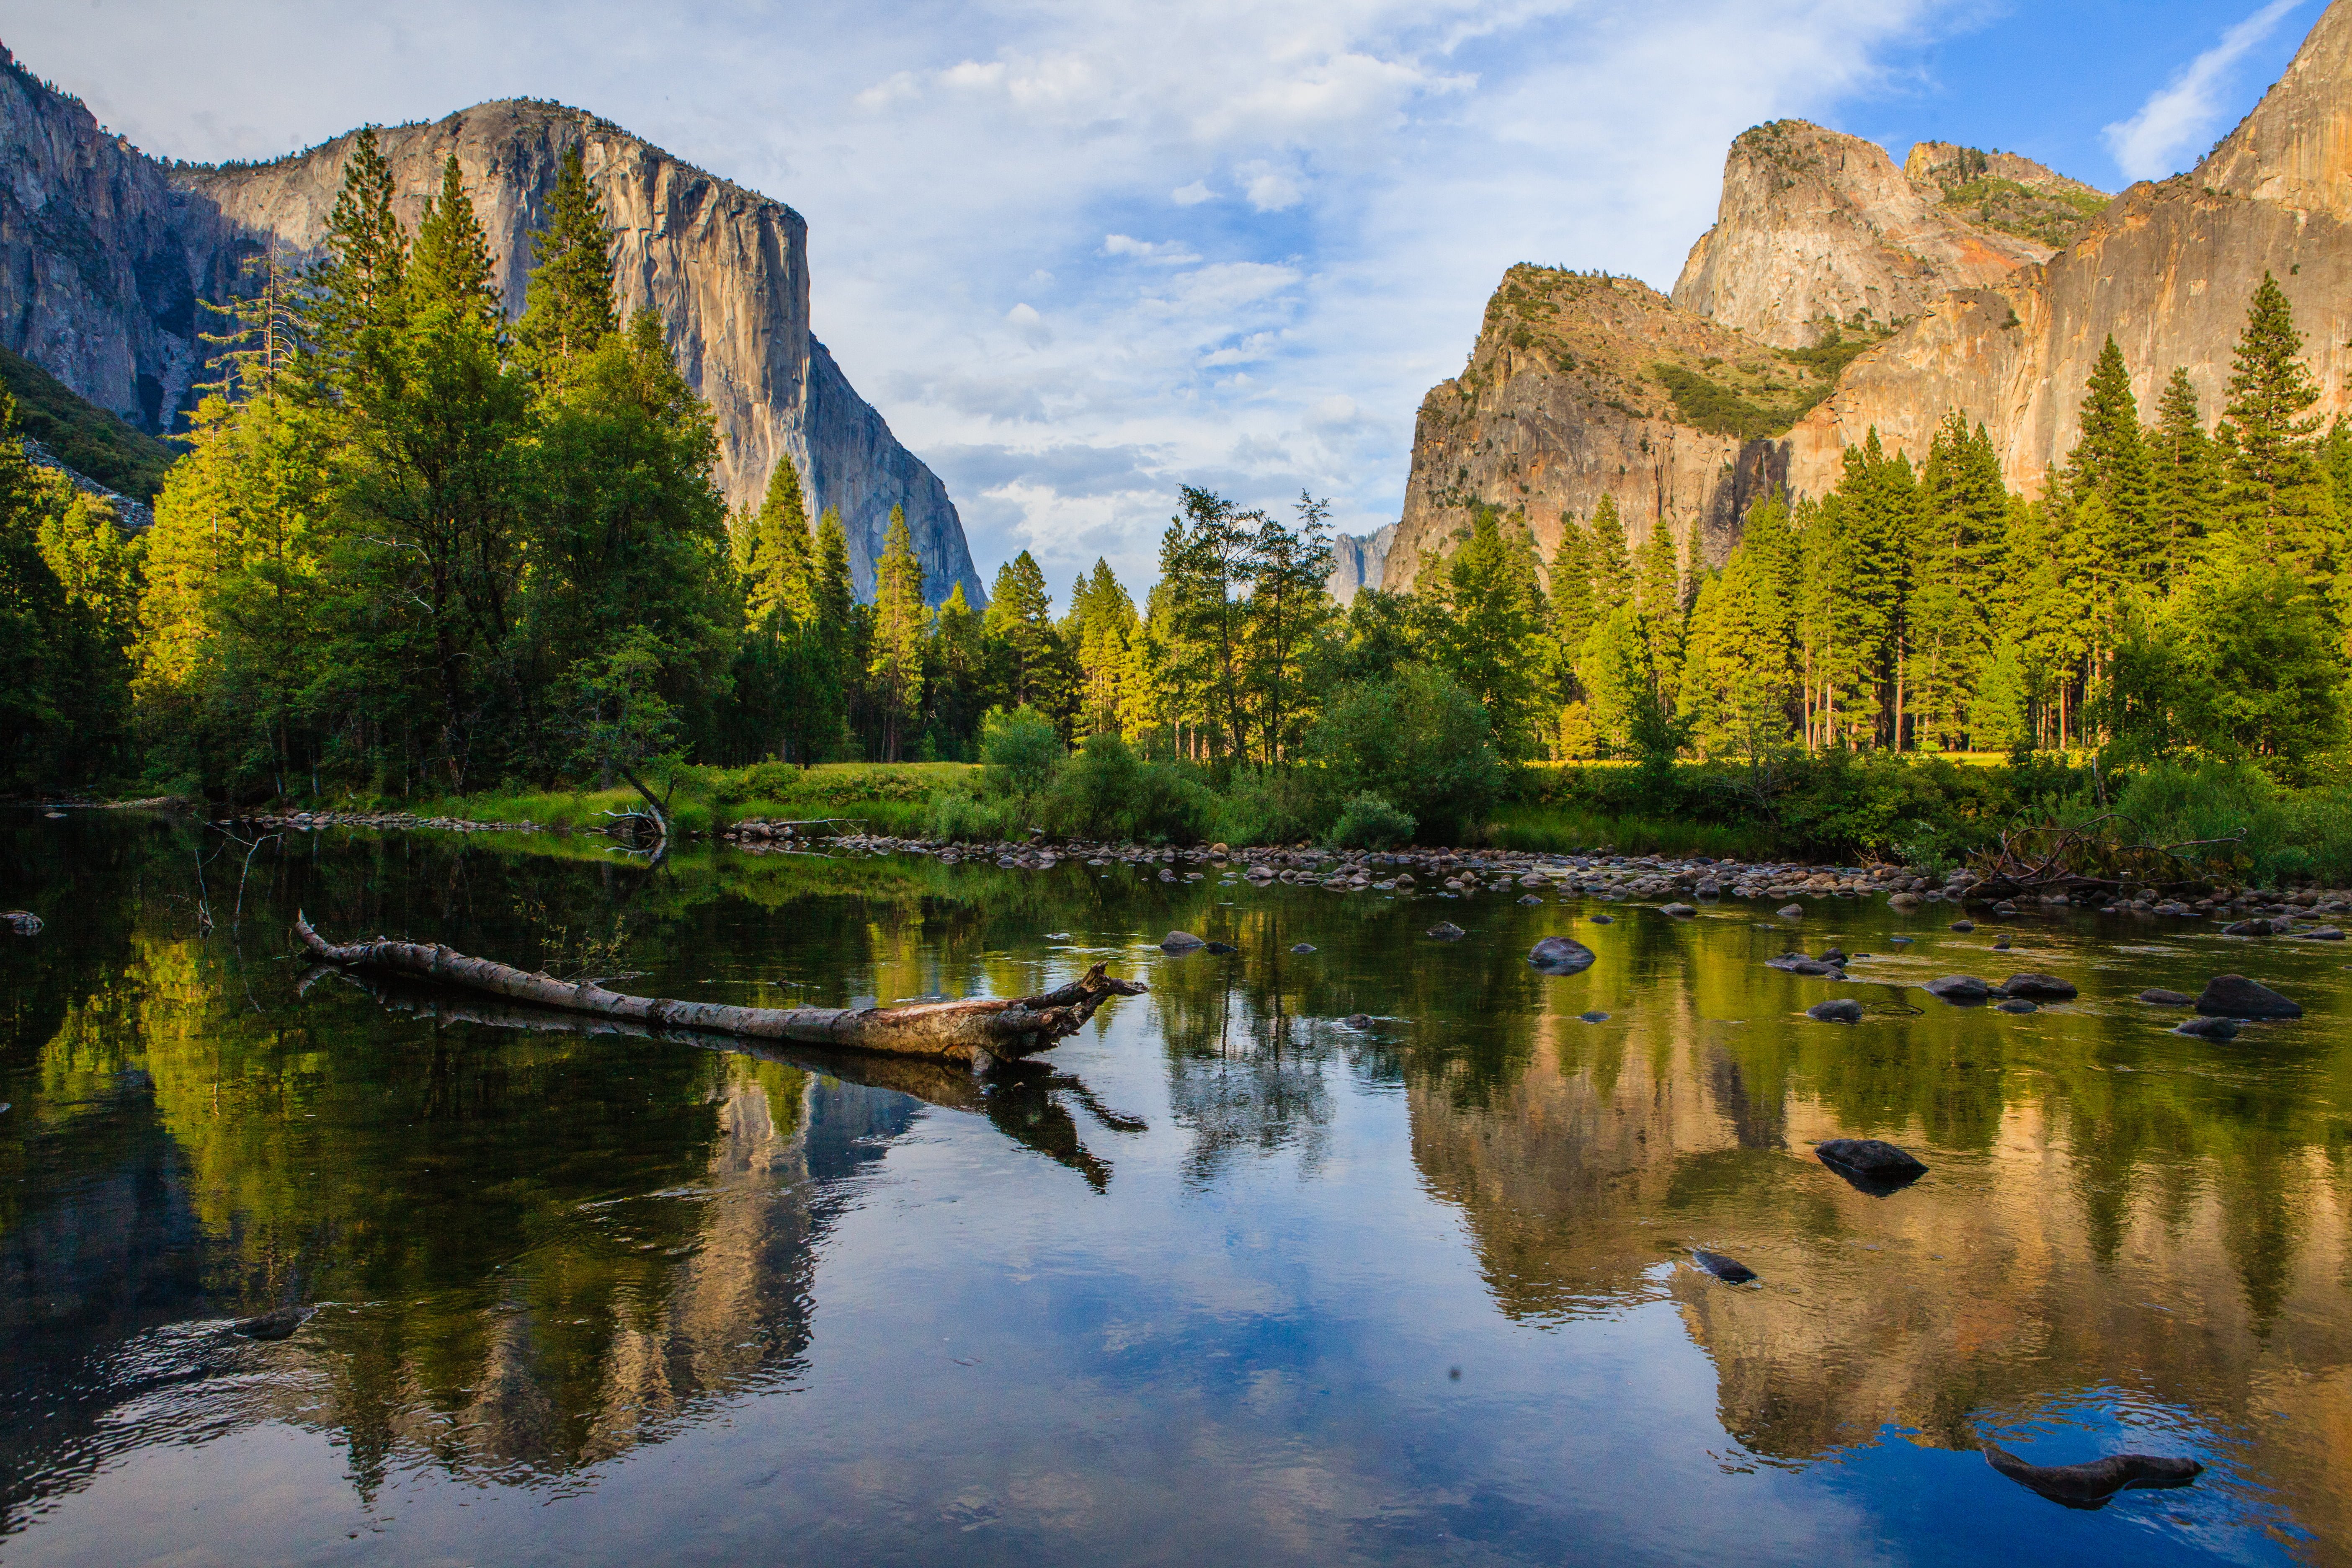 Обои на телефон самые красивые в мире. Национальный парк Йосемити, США. Йосемитский национальный парк Калифорния. Национальный парк Йосемити (штат Калифорния). Национальный парк Йосемити Калифорния обои.